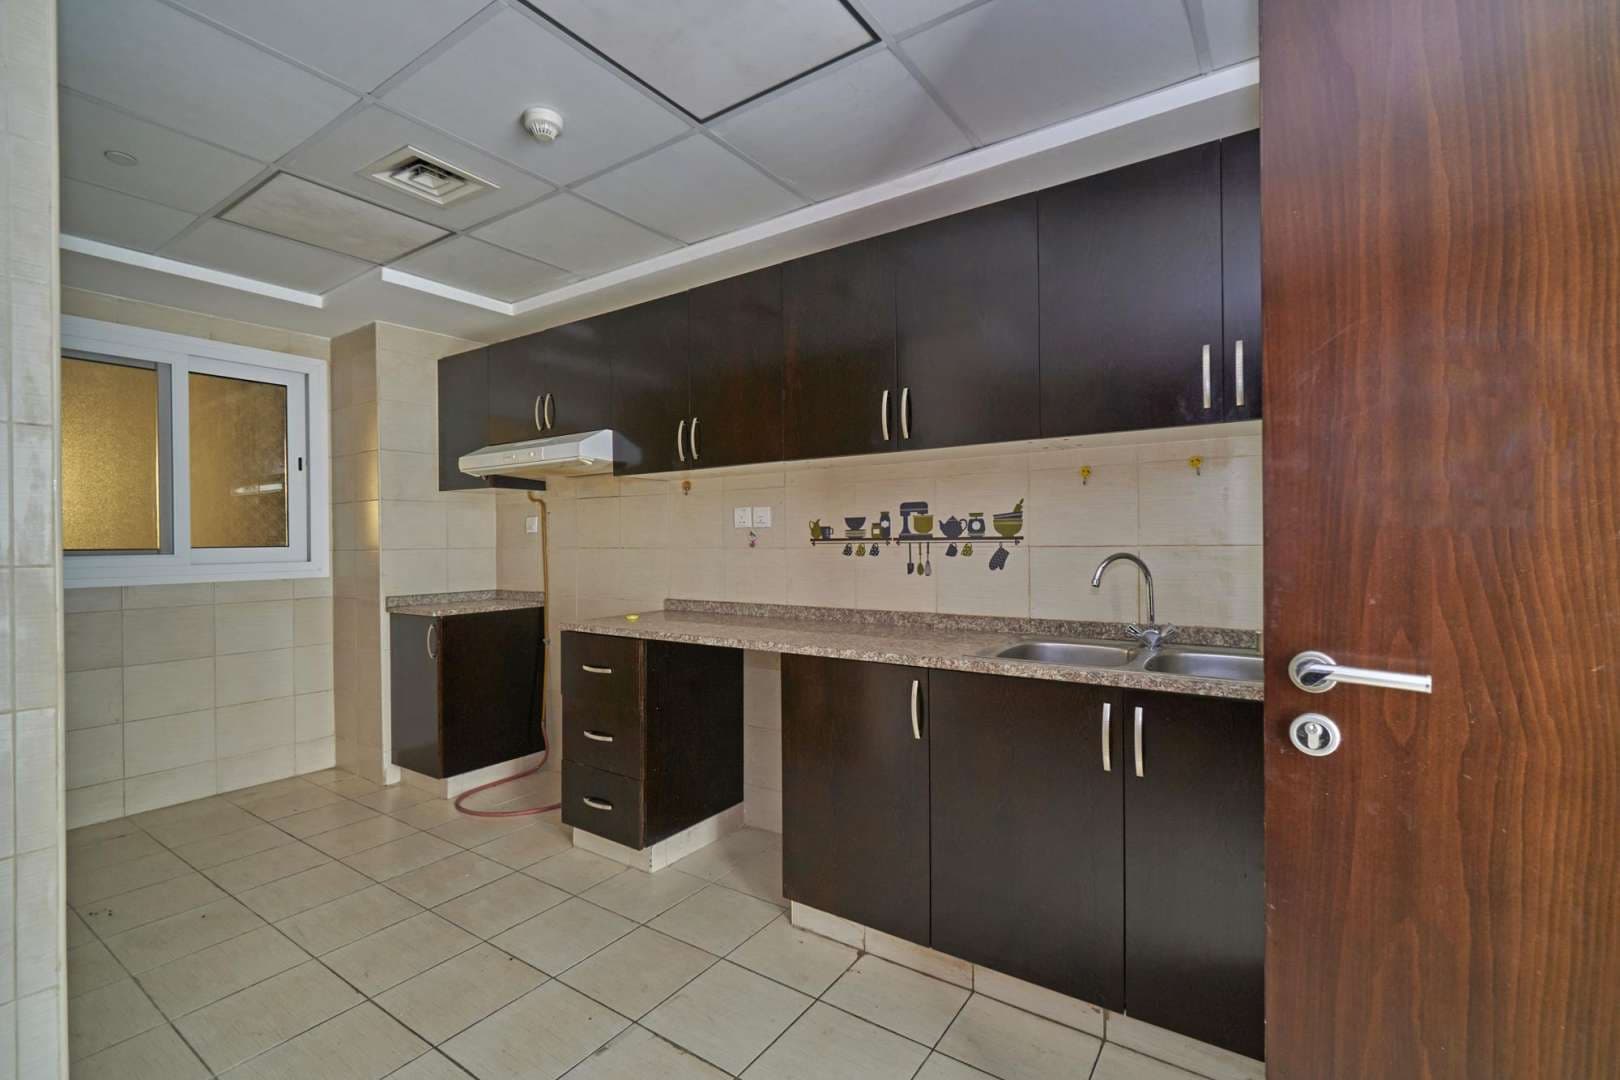 2 Bedroom Apartment For Sale Al Fahad Tower 2 Lp05453 1f945d52733ece00.jpg